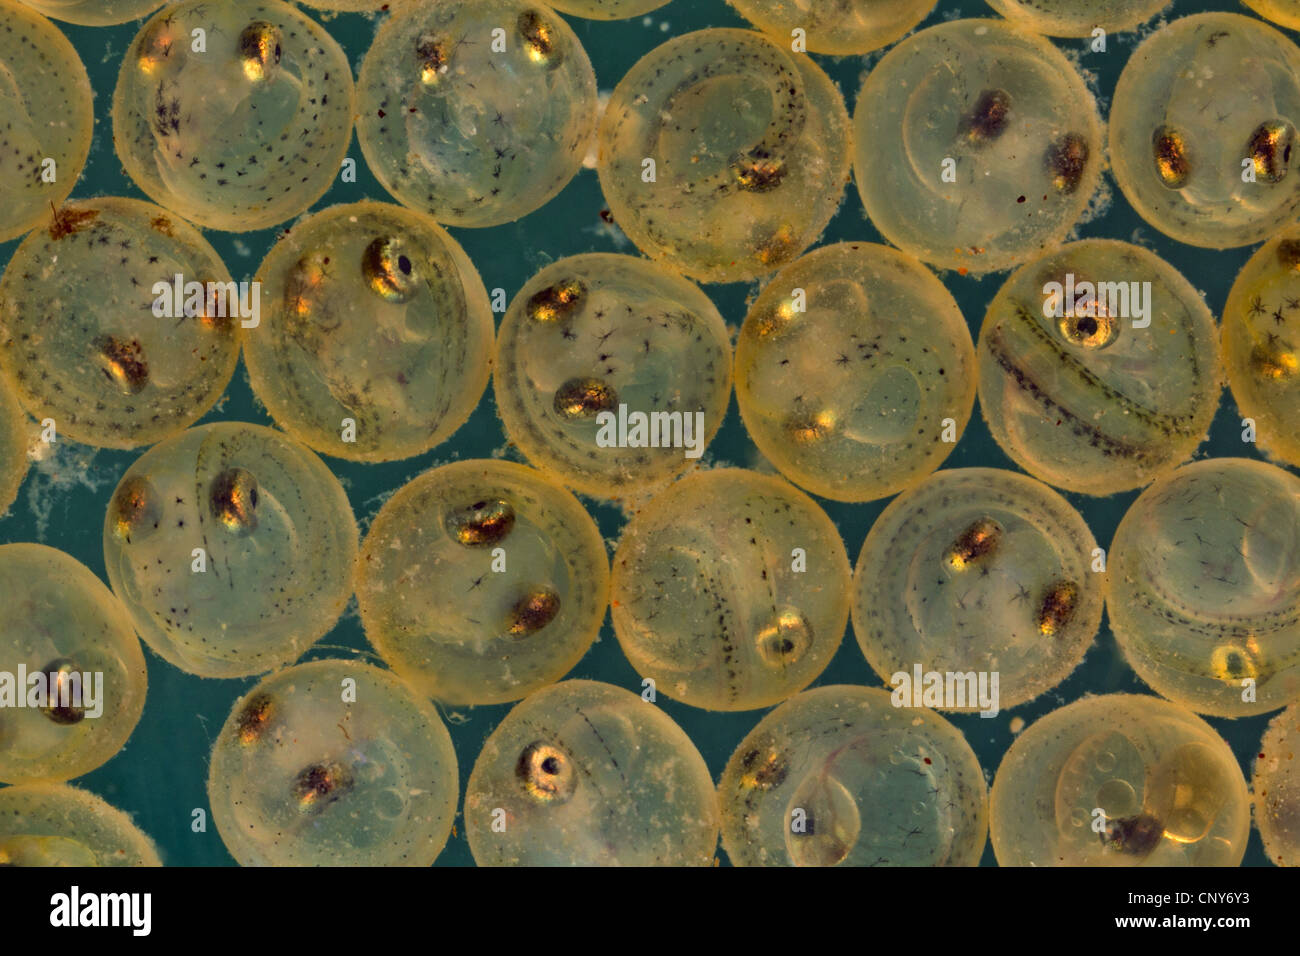 whitefishes, lake whitefishes (Coregonus spec.), eggs with the eyes already developed Stock Photo